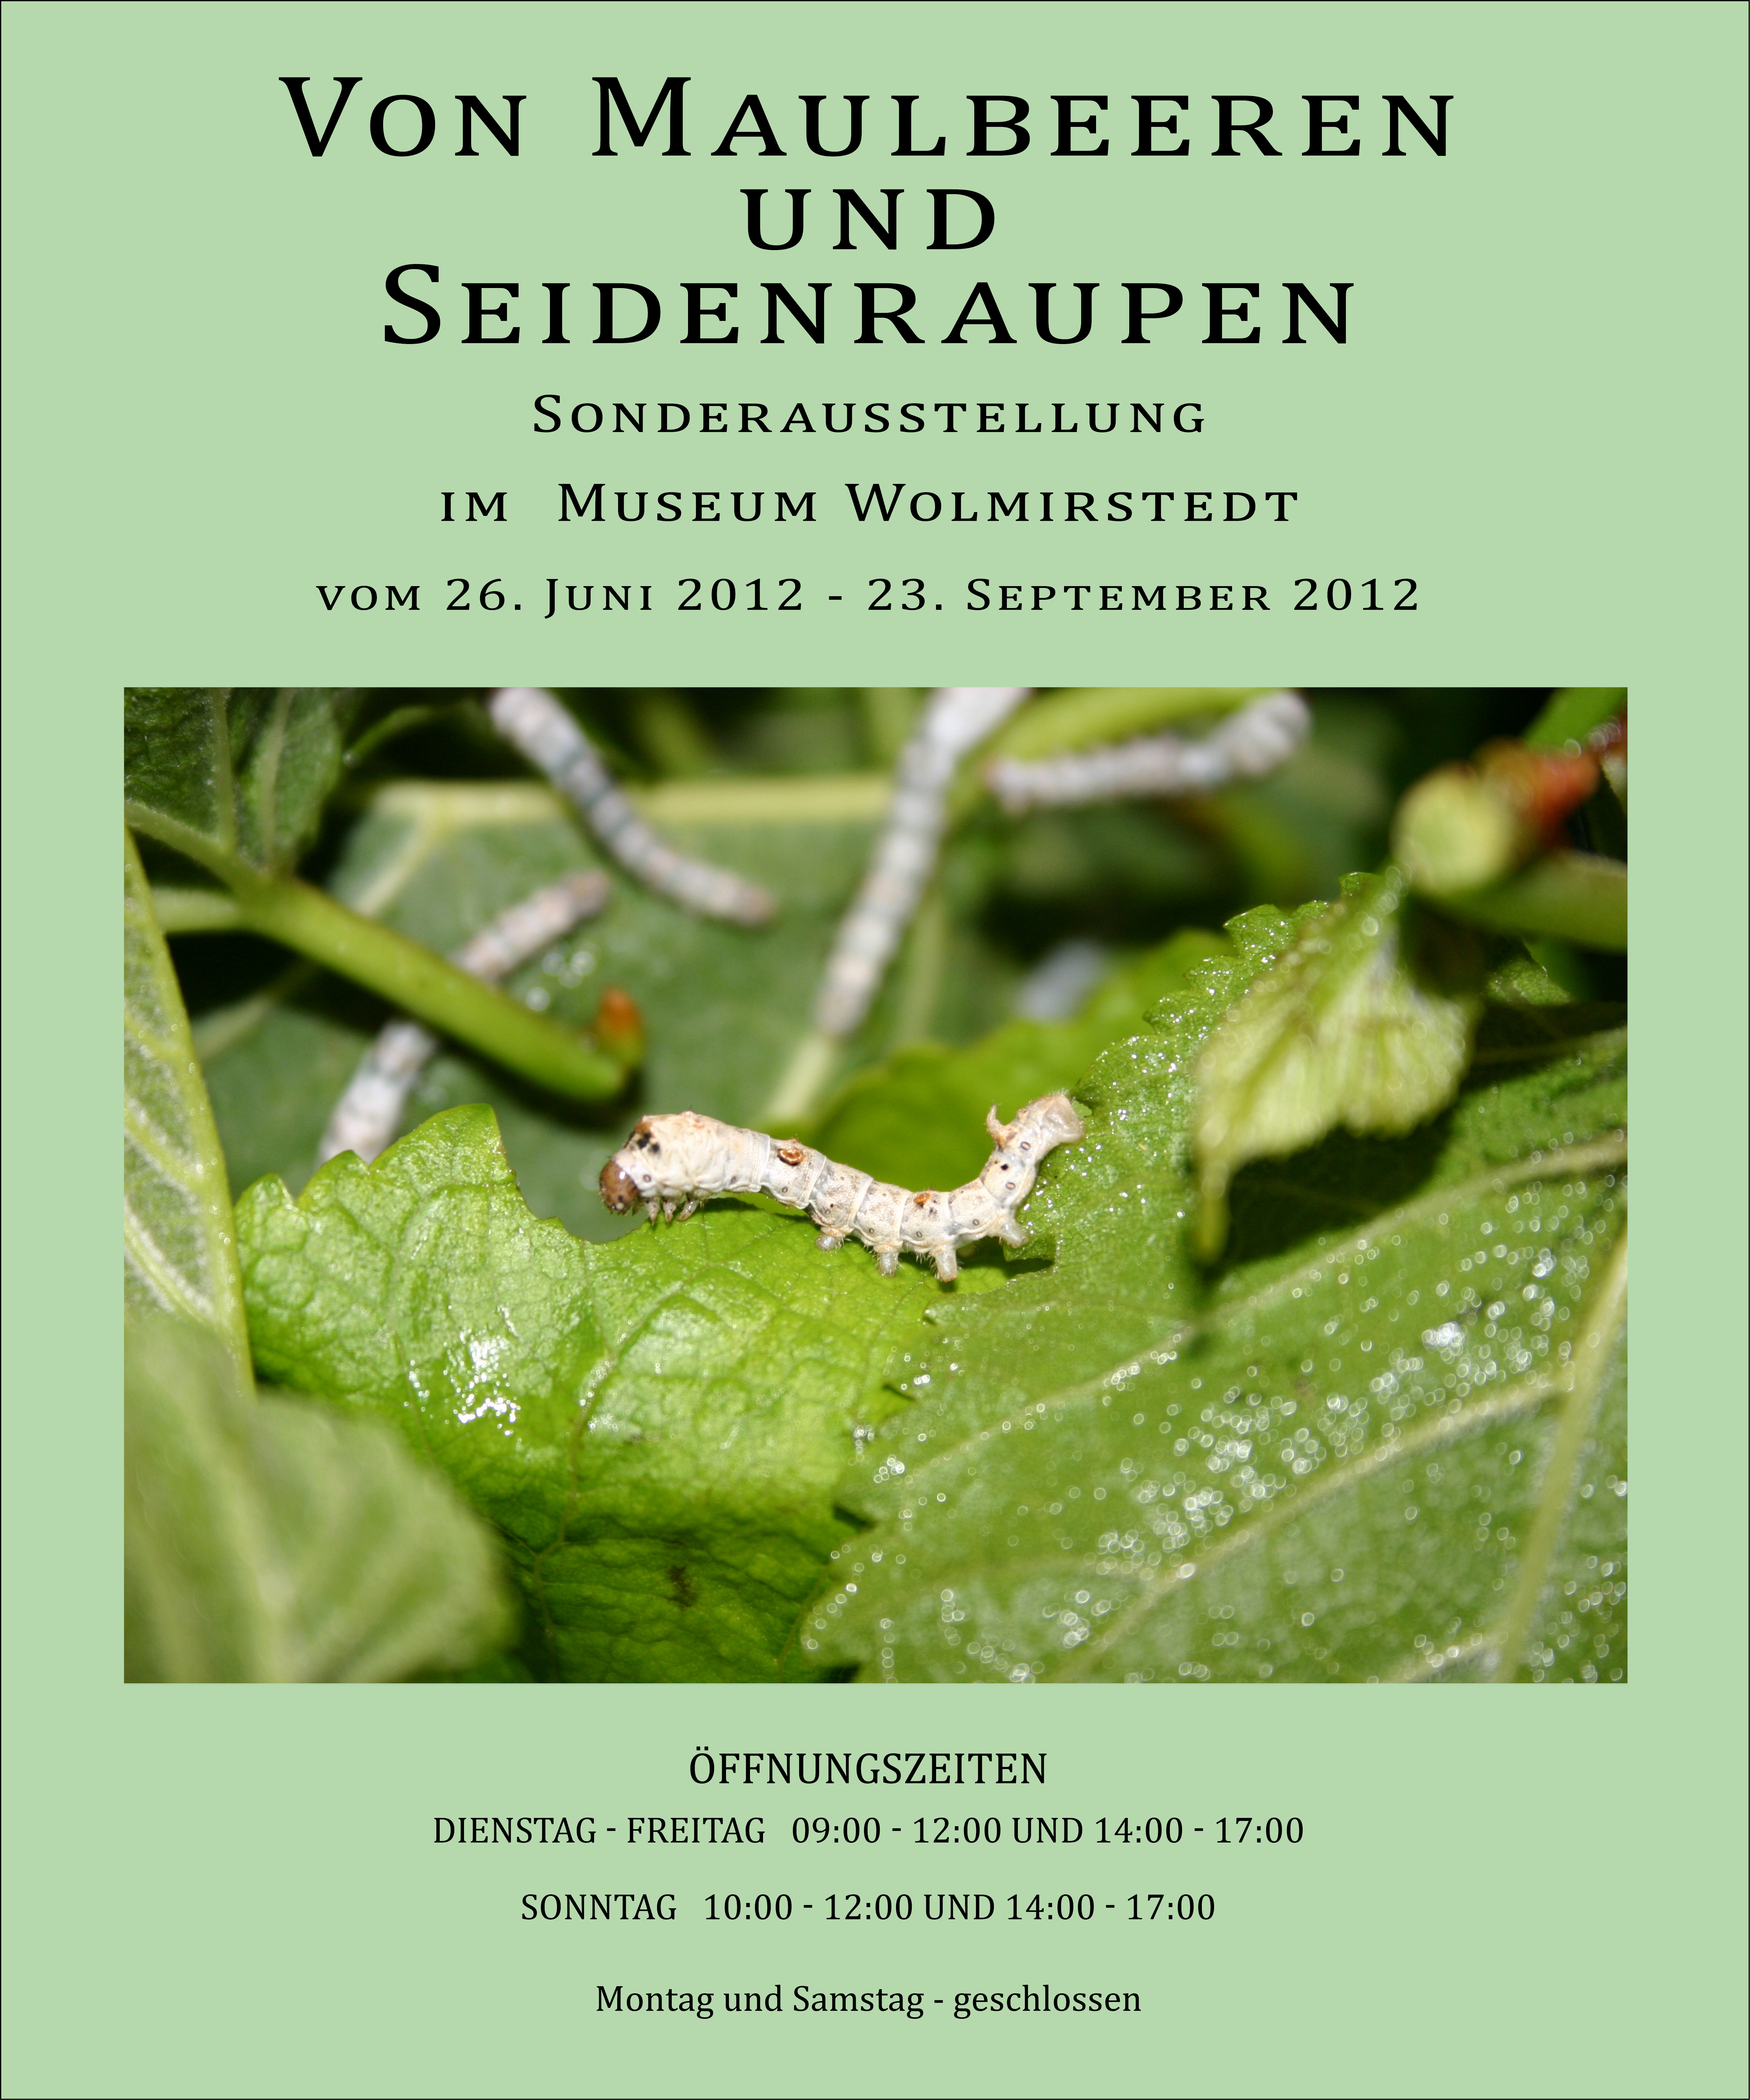 Ausstellungsplakat Sonderausstellung "Von Maulbeeren und Seidenraupen" (Museum Wolmirstedt RR-F)